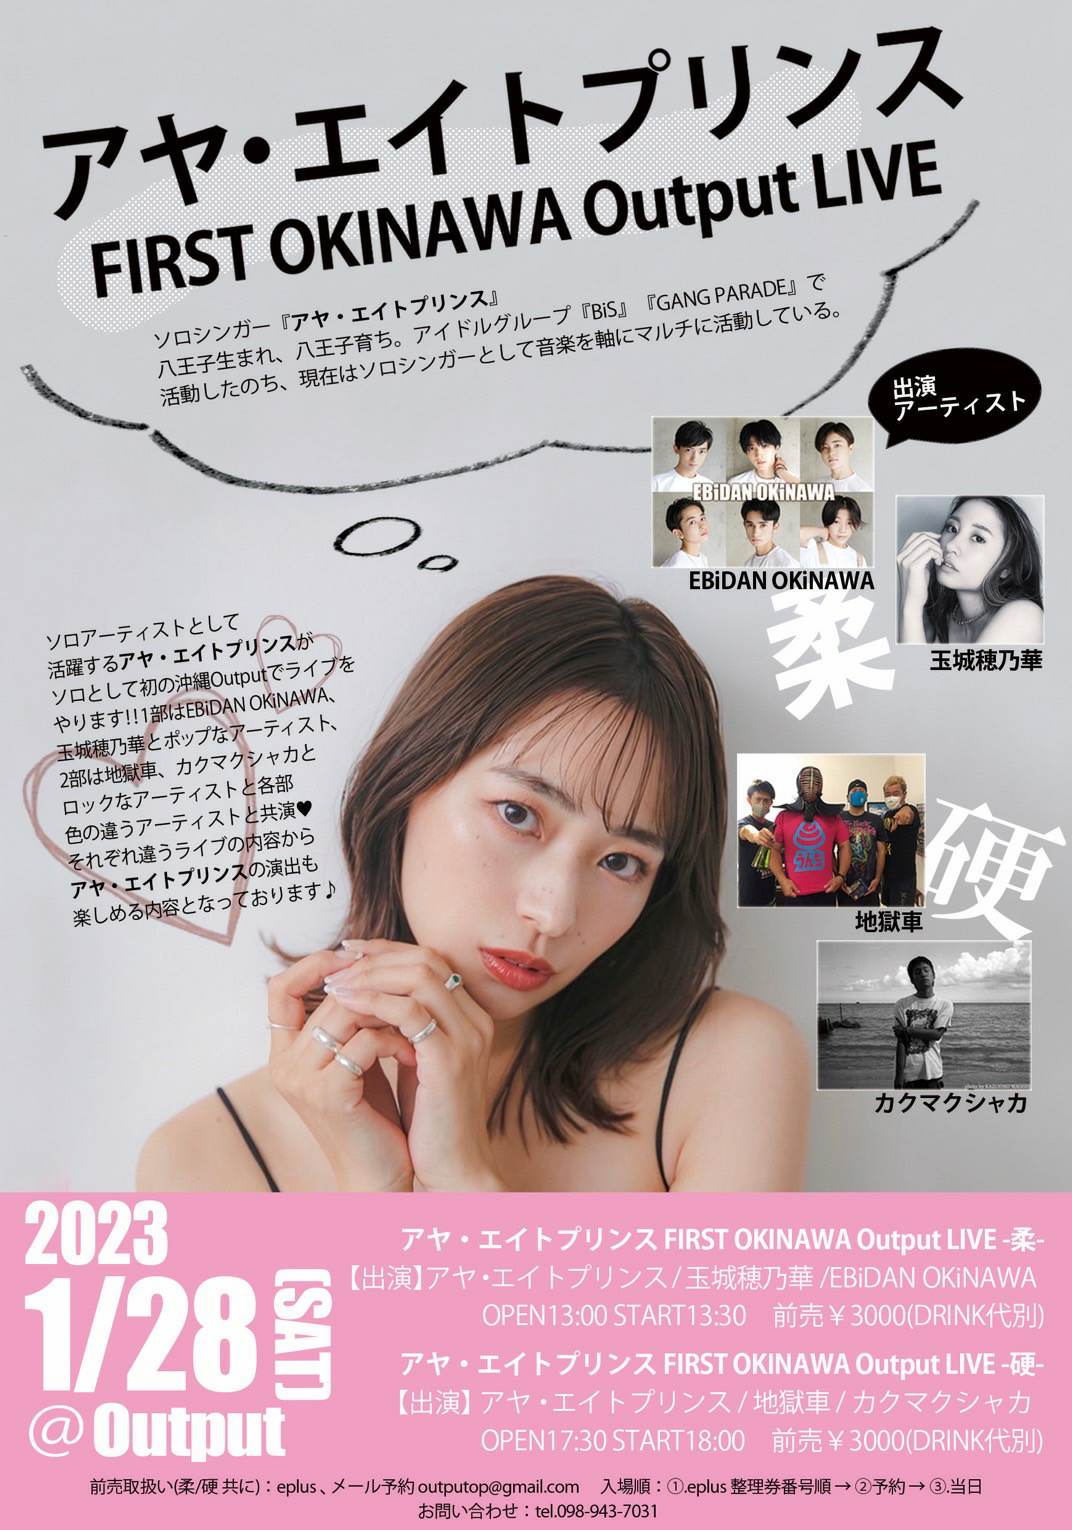 2023/01/28(土) 那覇 Output『アヤ・エイトプリンス FIRST OKINAWA Output LIVE-硬-』